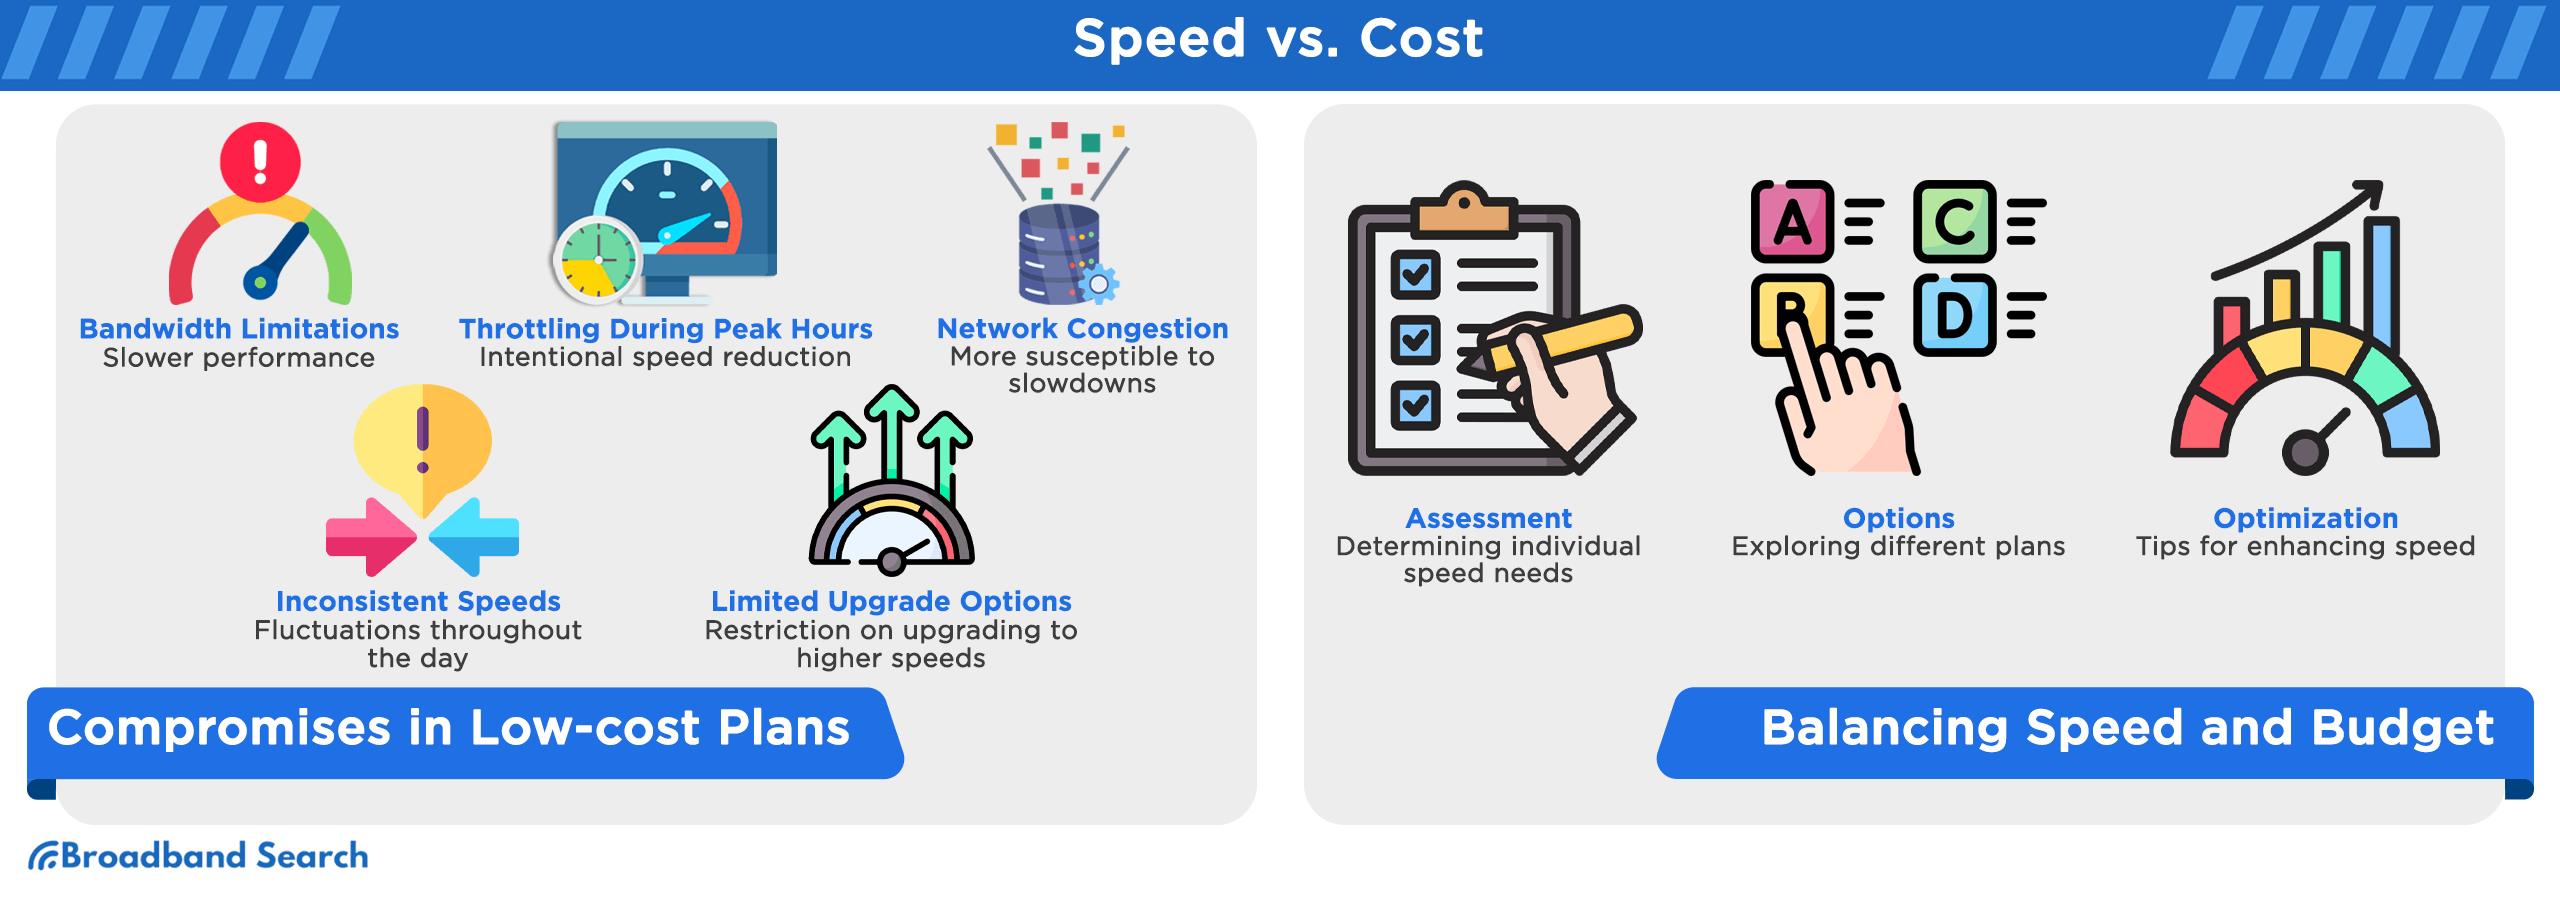 speed versus cost